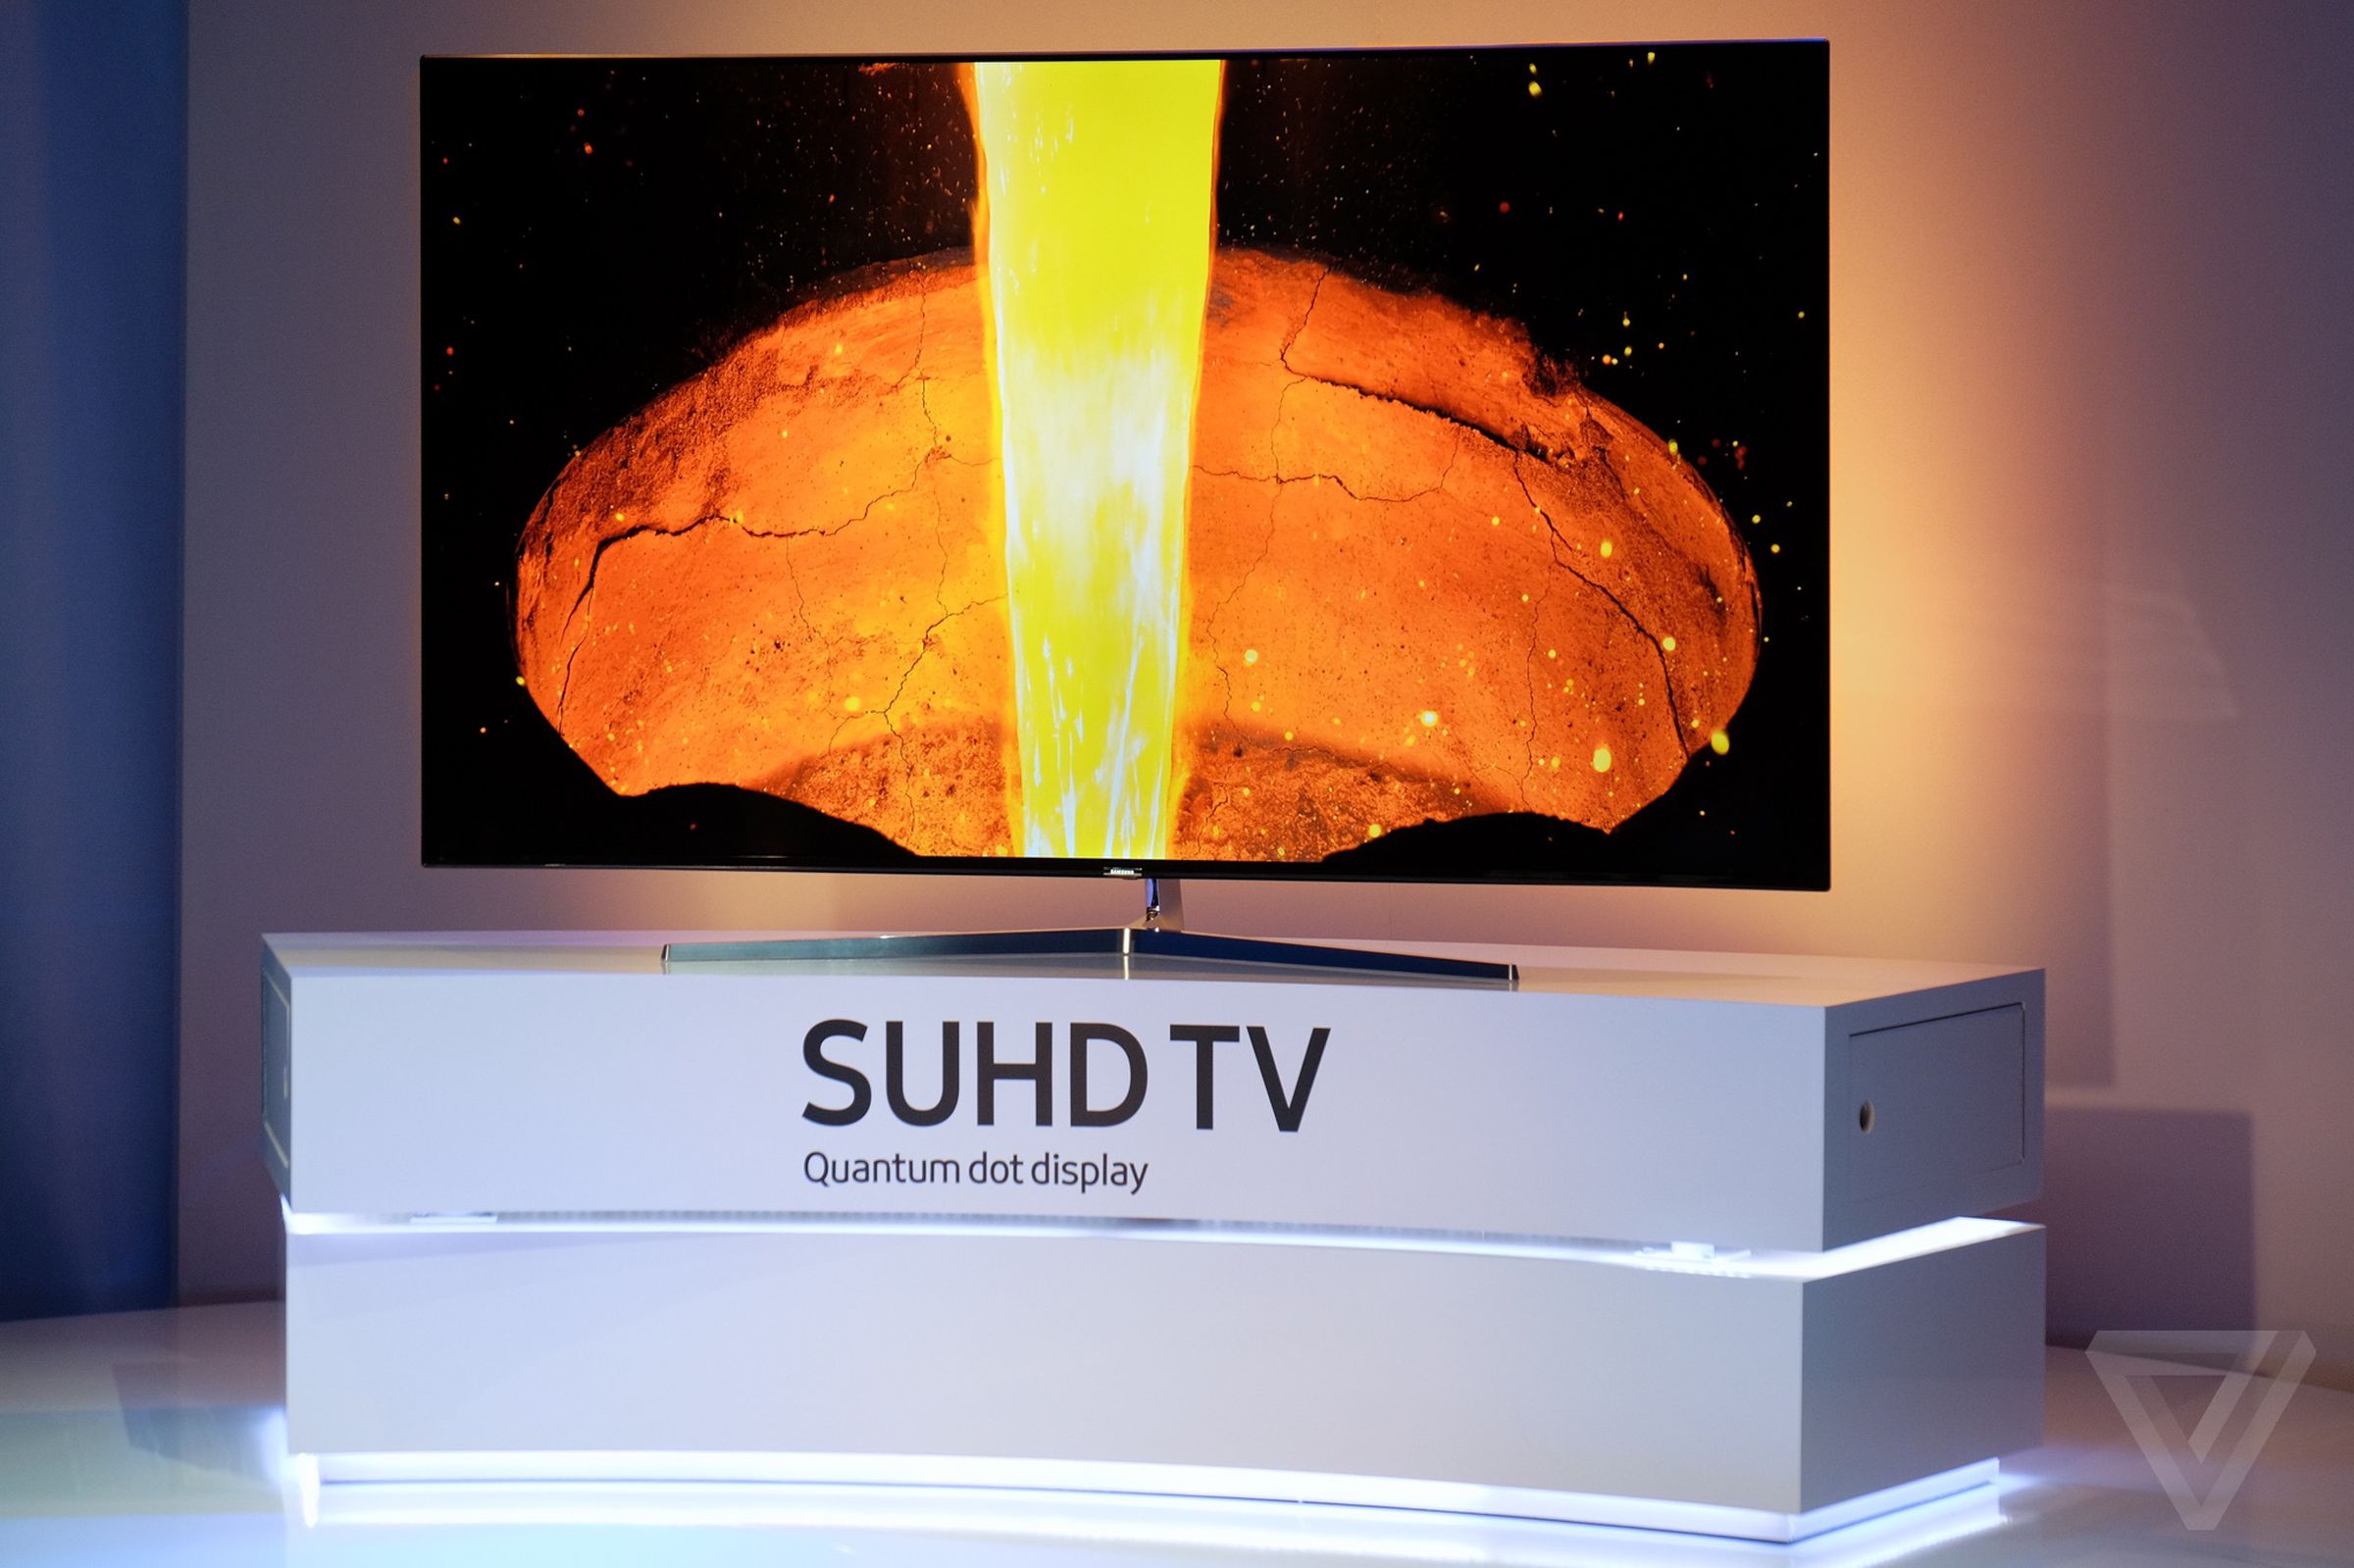 Samsung 2016 SUHD TV photos